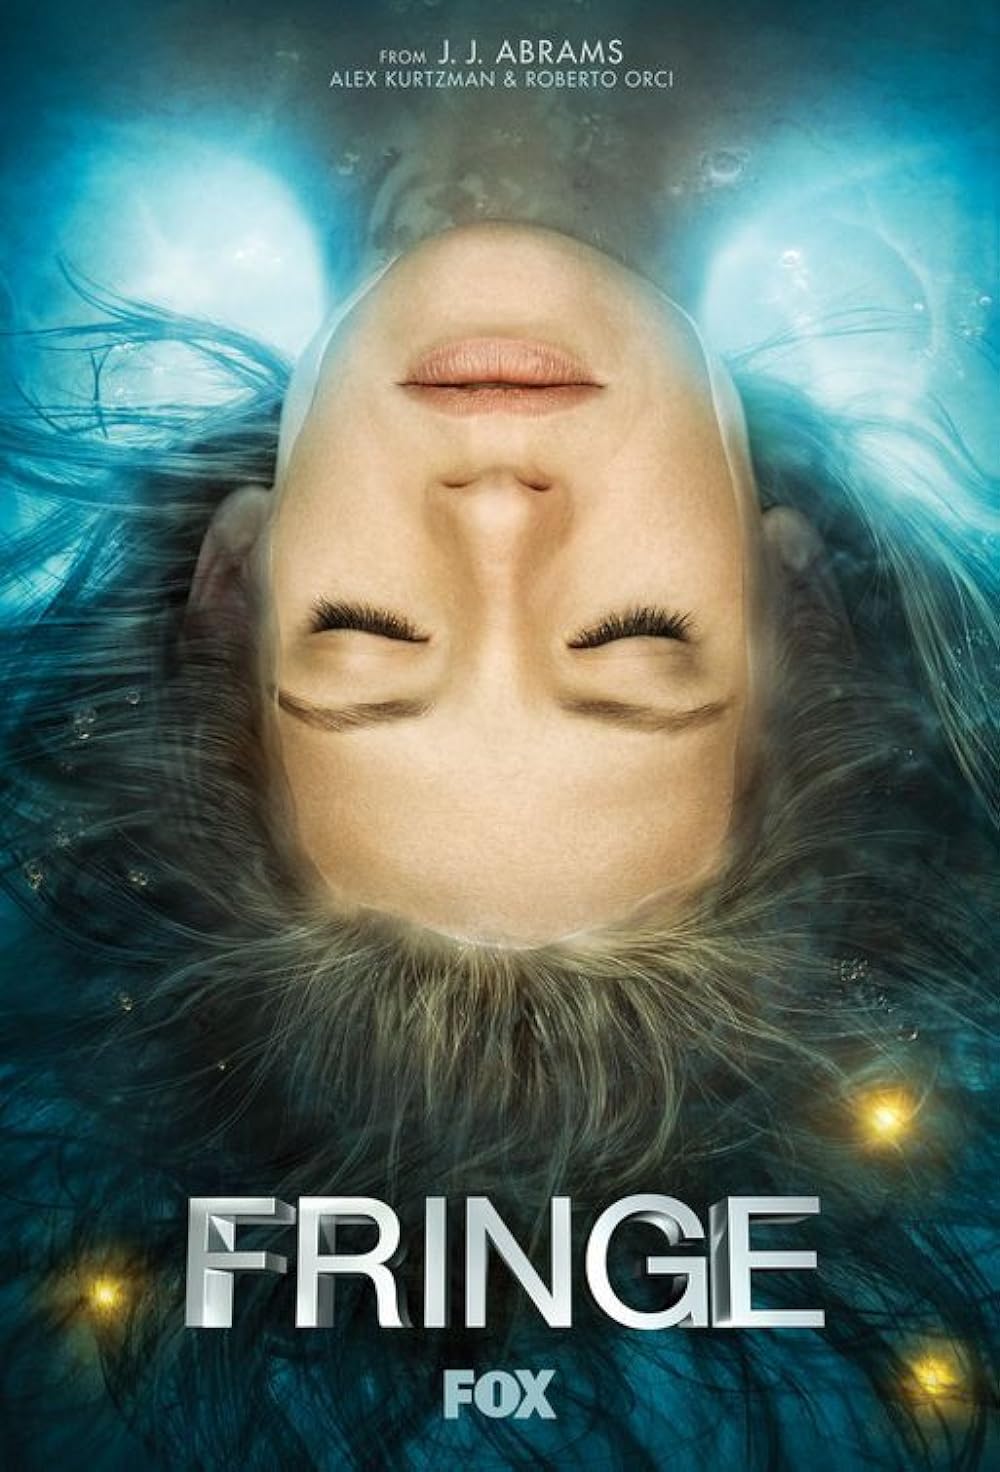 Fringe (2008) S1 EP01&EP20 192Kbps 23.976Fps 48Khz 2.0Ch DigitalTV Turkish Audio TAC